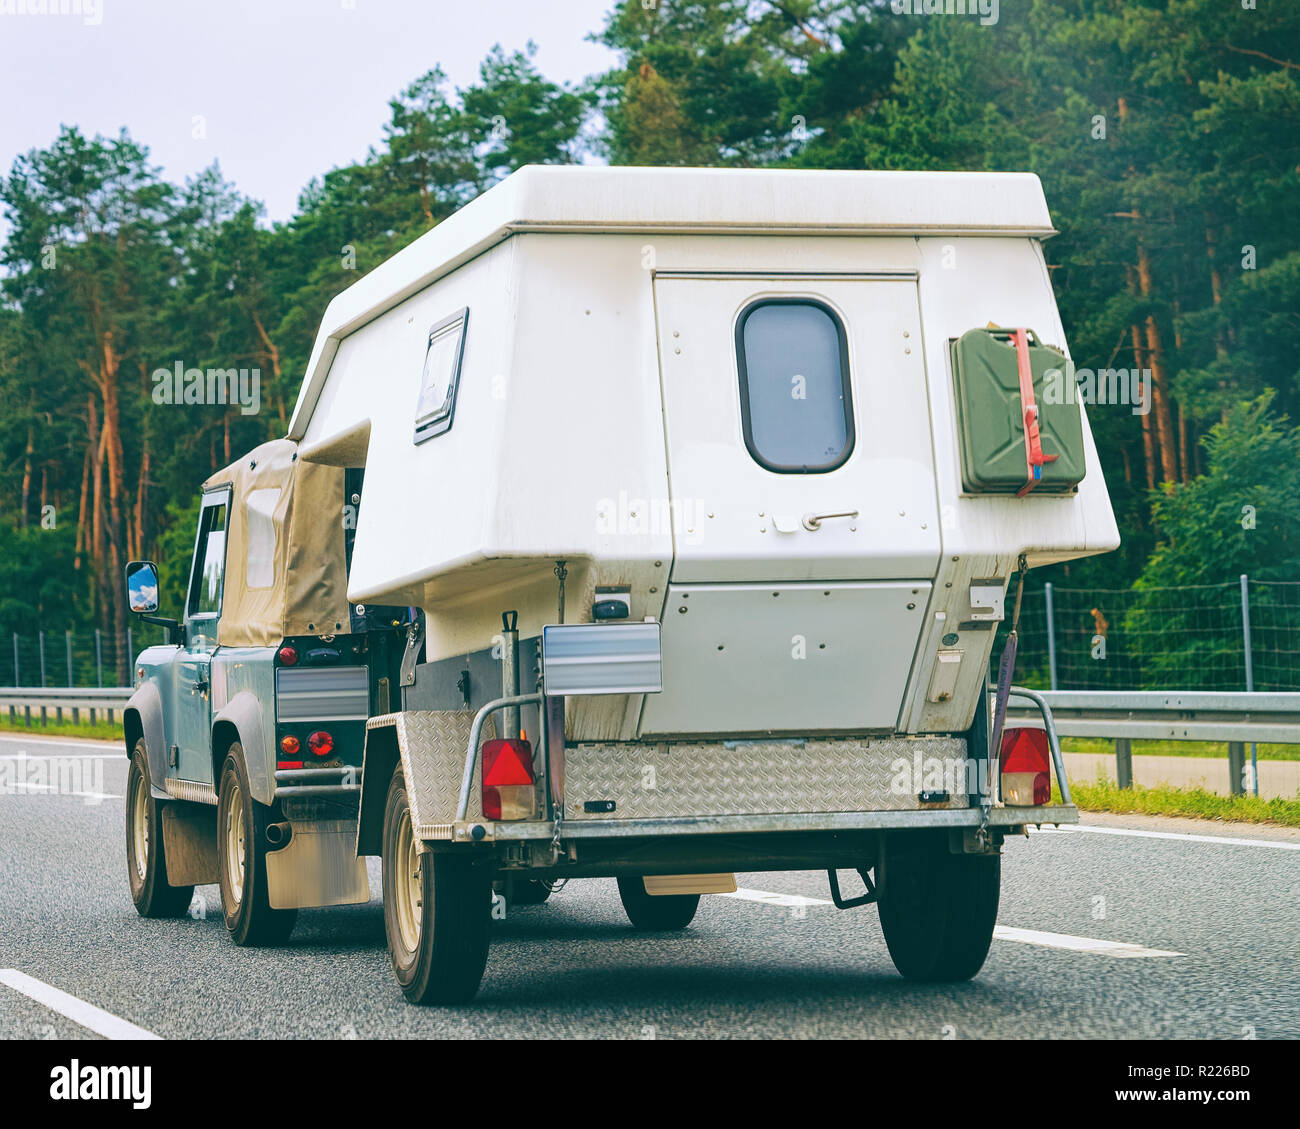 camper wagon